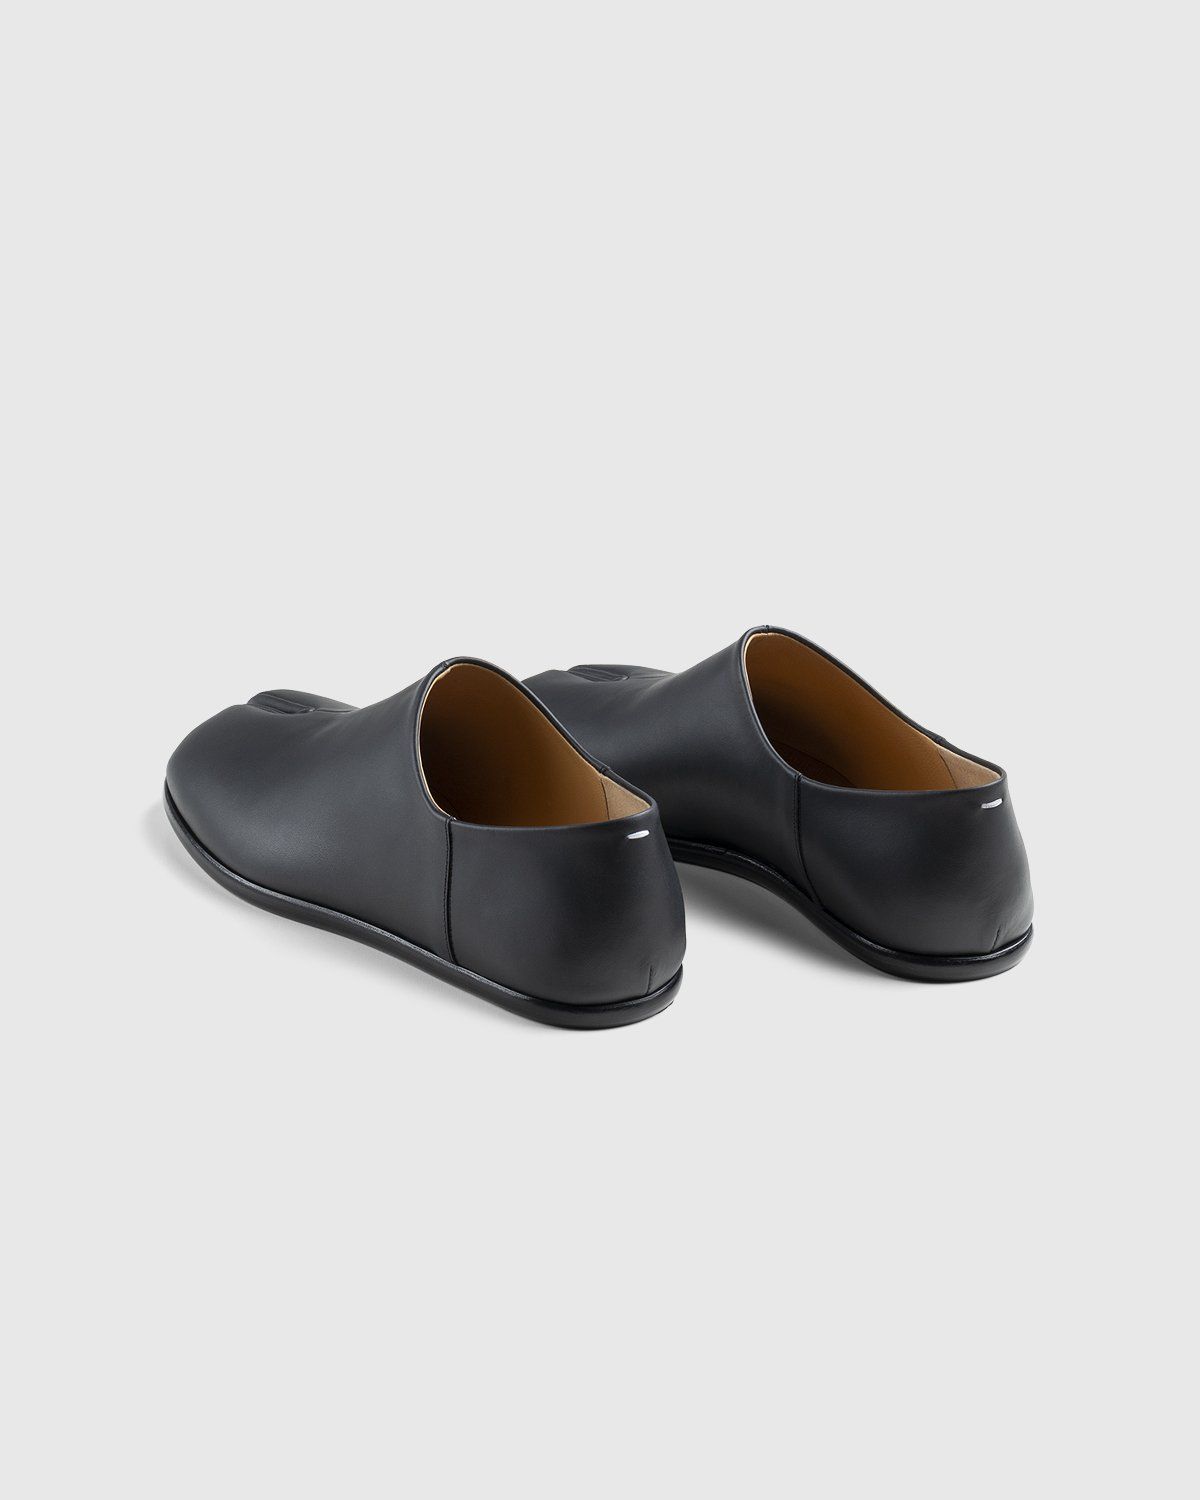 Maison Margiela – Tabi Slip On Black - Shoes - Black - Image 4